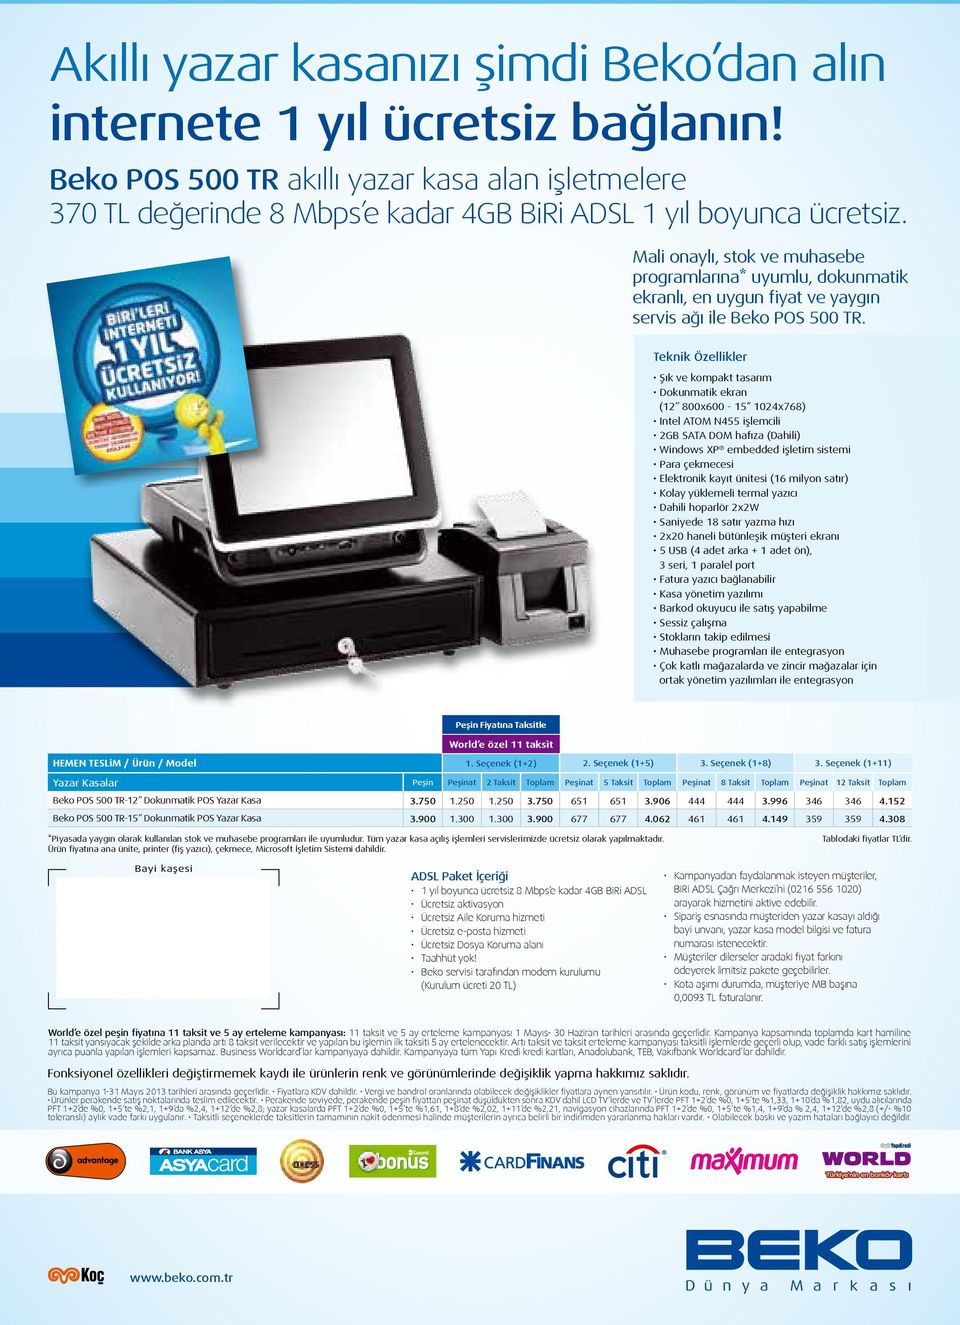 Şık ve kompakt tasarım Dokunmatik ekran (12 800x600-15 1024x768) Intel ATOM N455 işlemcili 2GB SATA DOM hafıza (Dahili) Windows XP embedded işletim sistemi Para çekmecesi Elektronik kayıt ünitesi (16